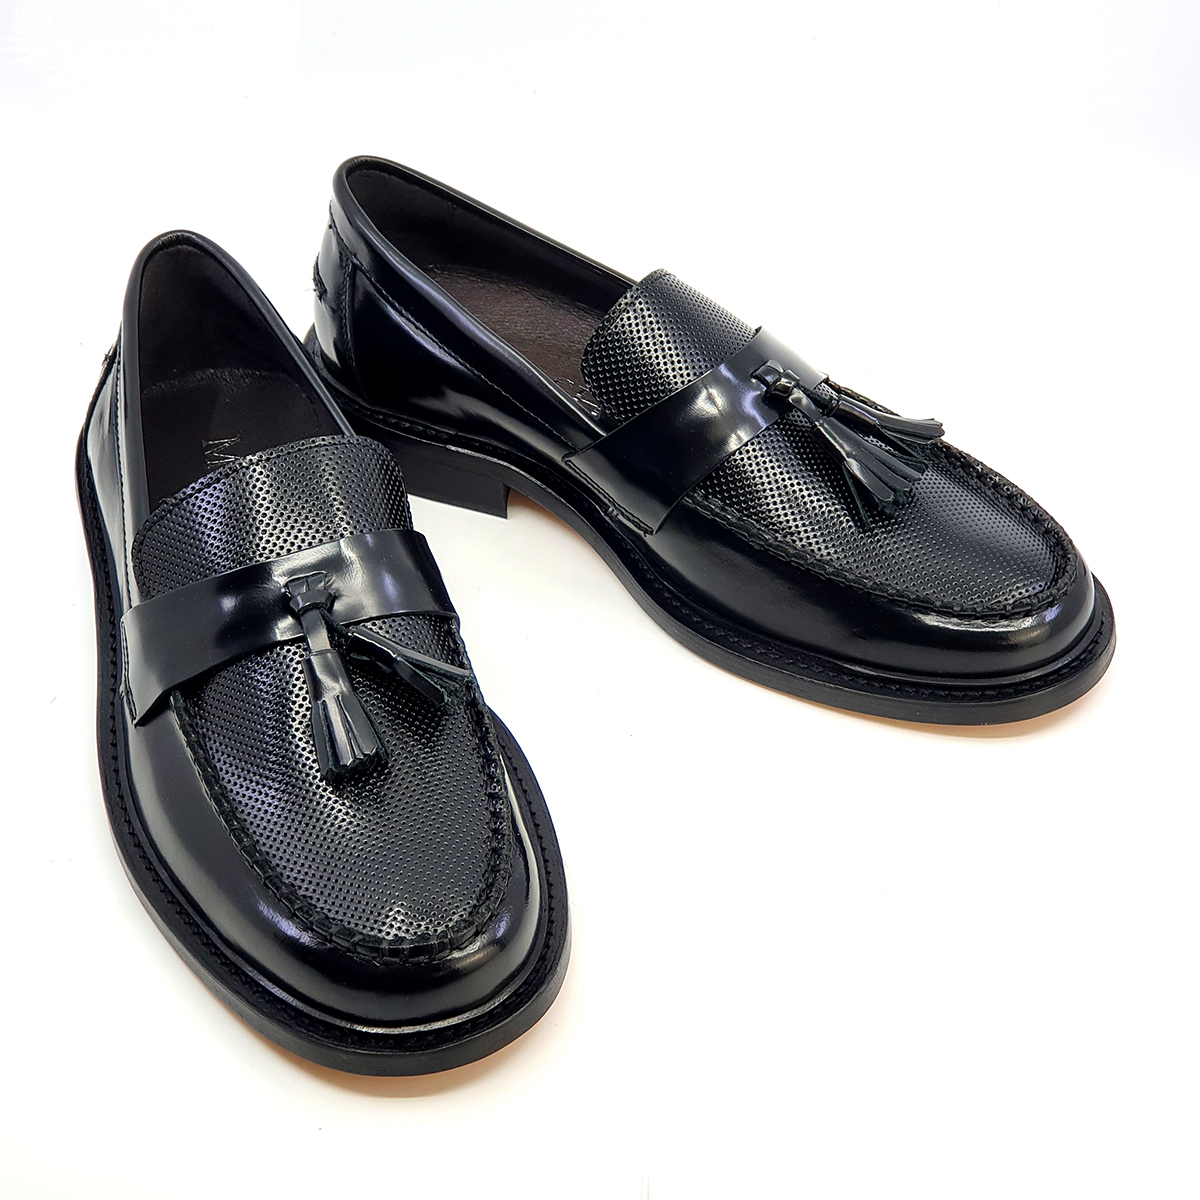 The Teabag – Black Tassel – Shoes